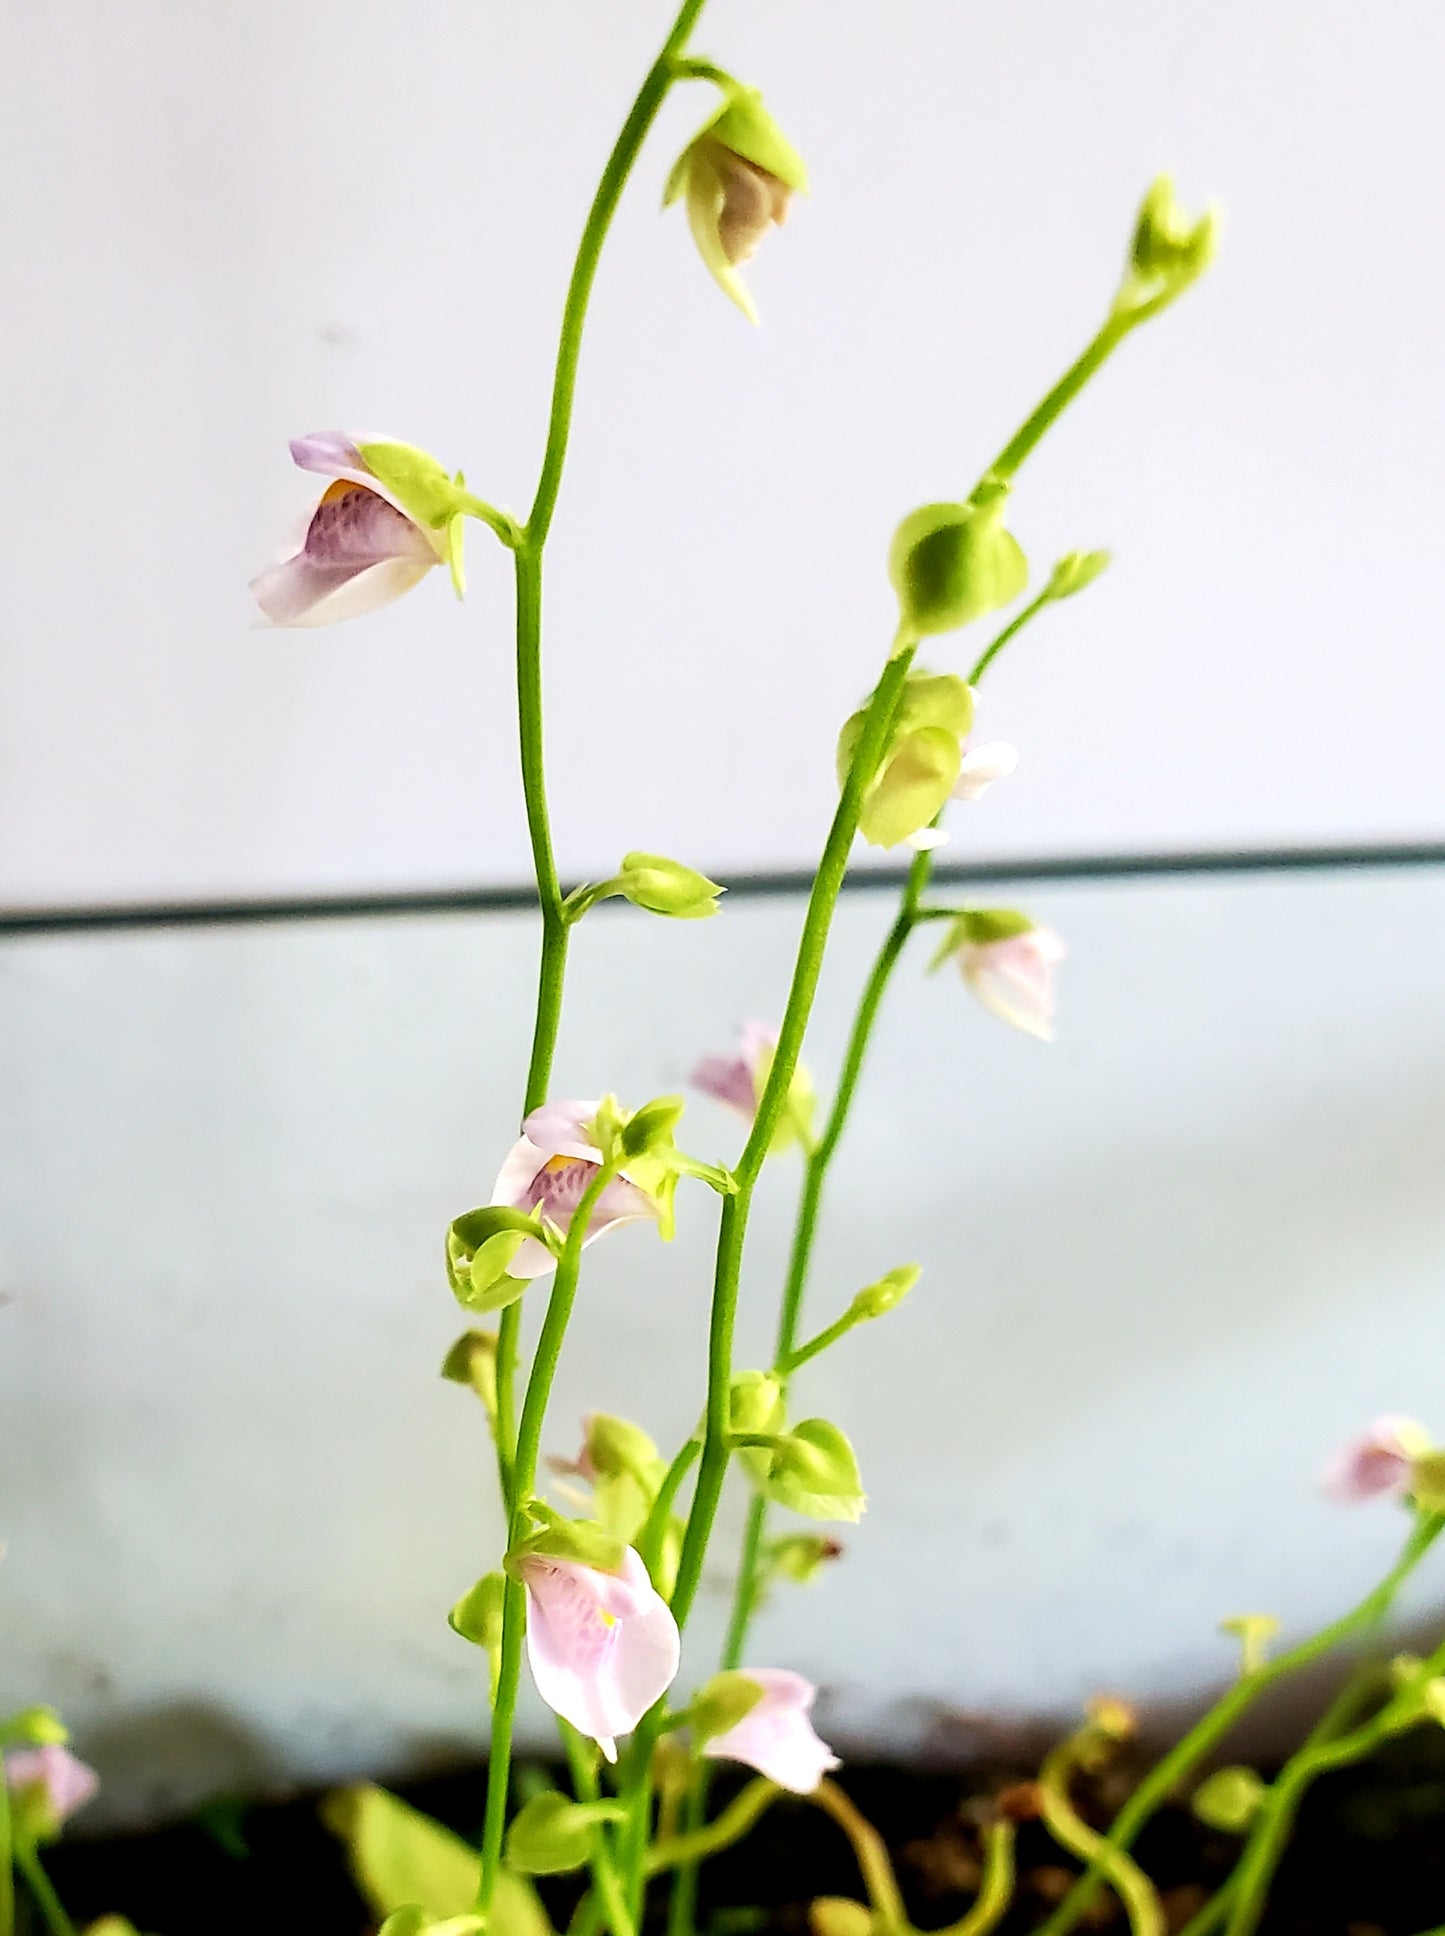 Bladderwort Utricularia Calycifida - Carnivorous Plant